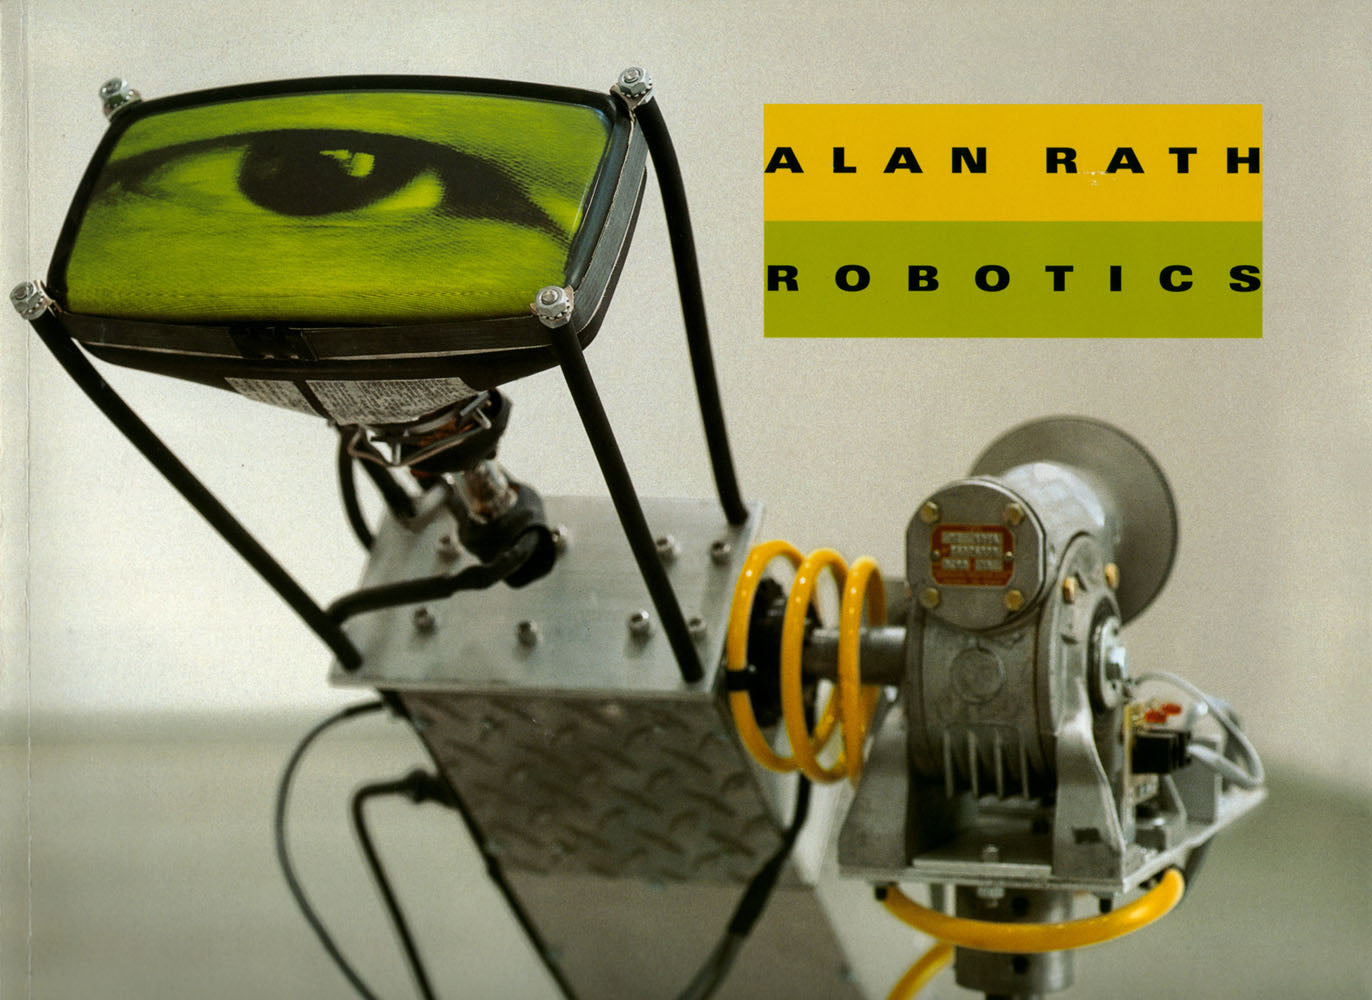 Alan Rath: Robotics